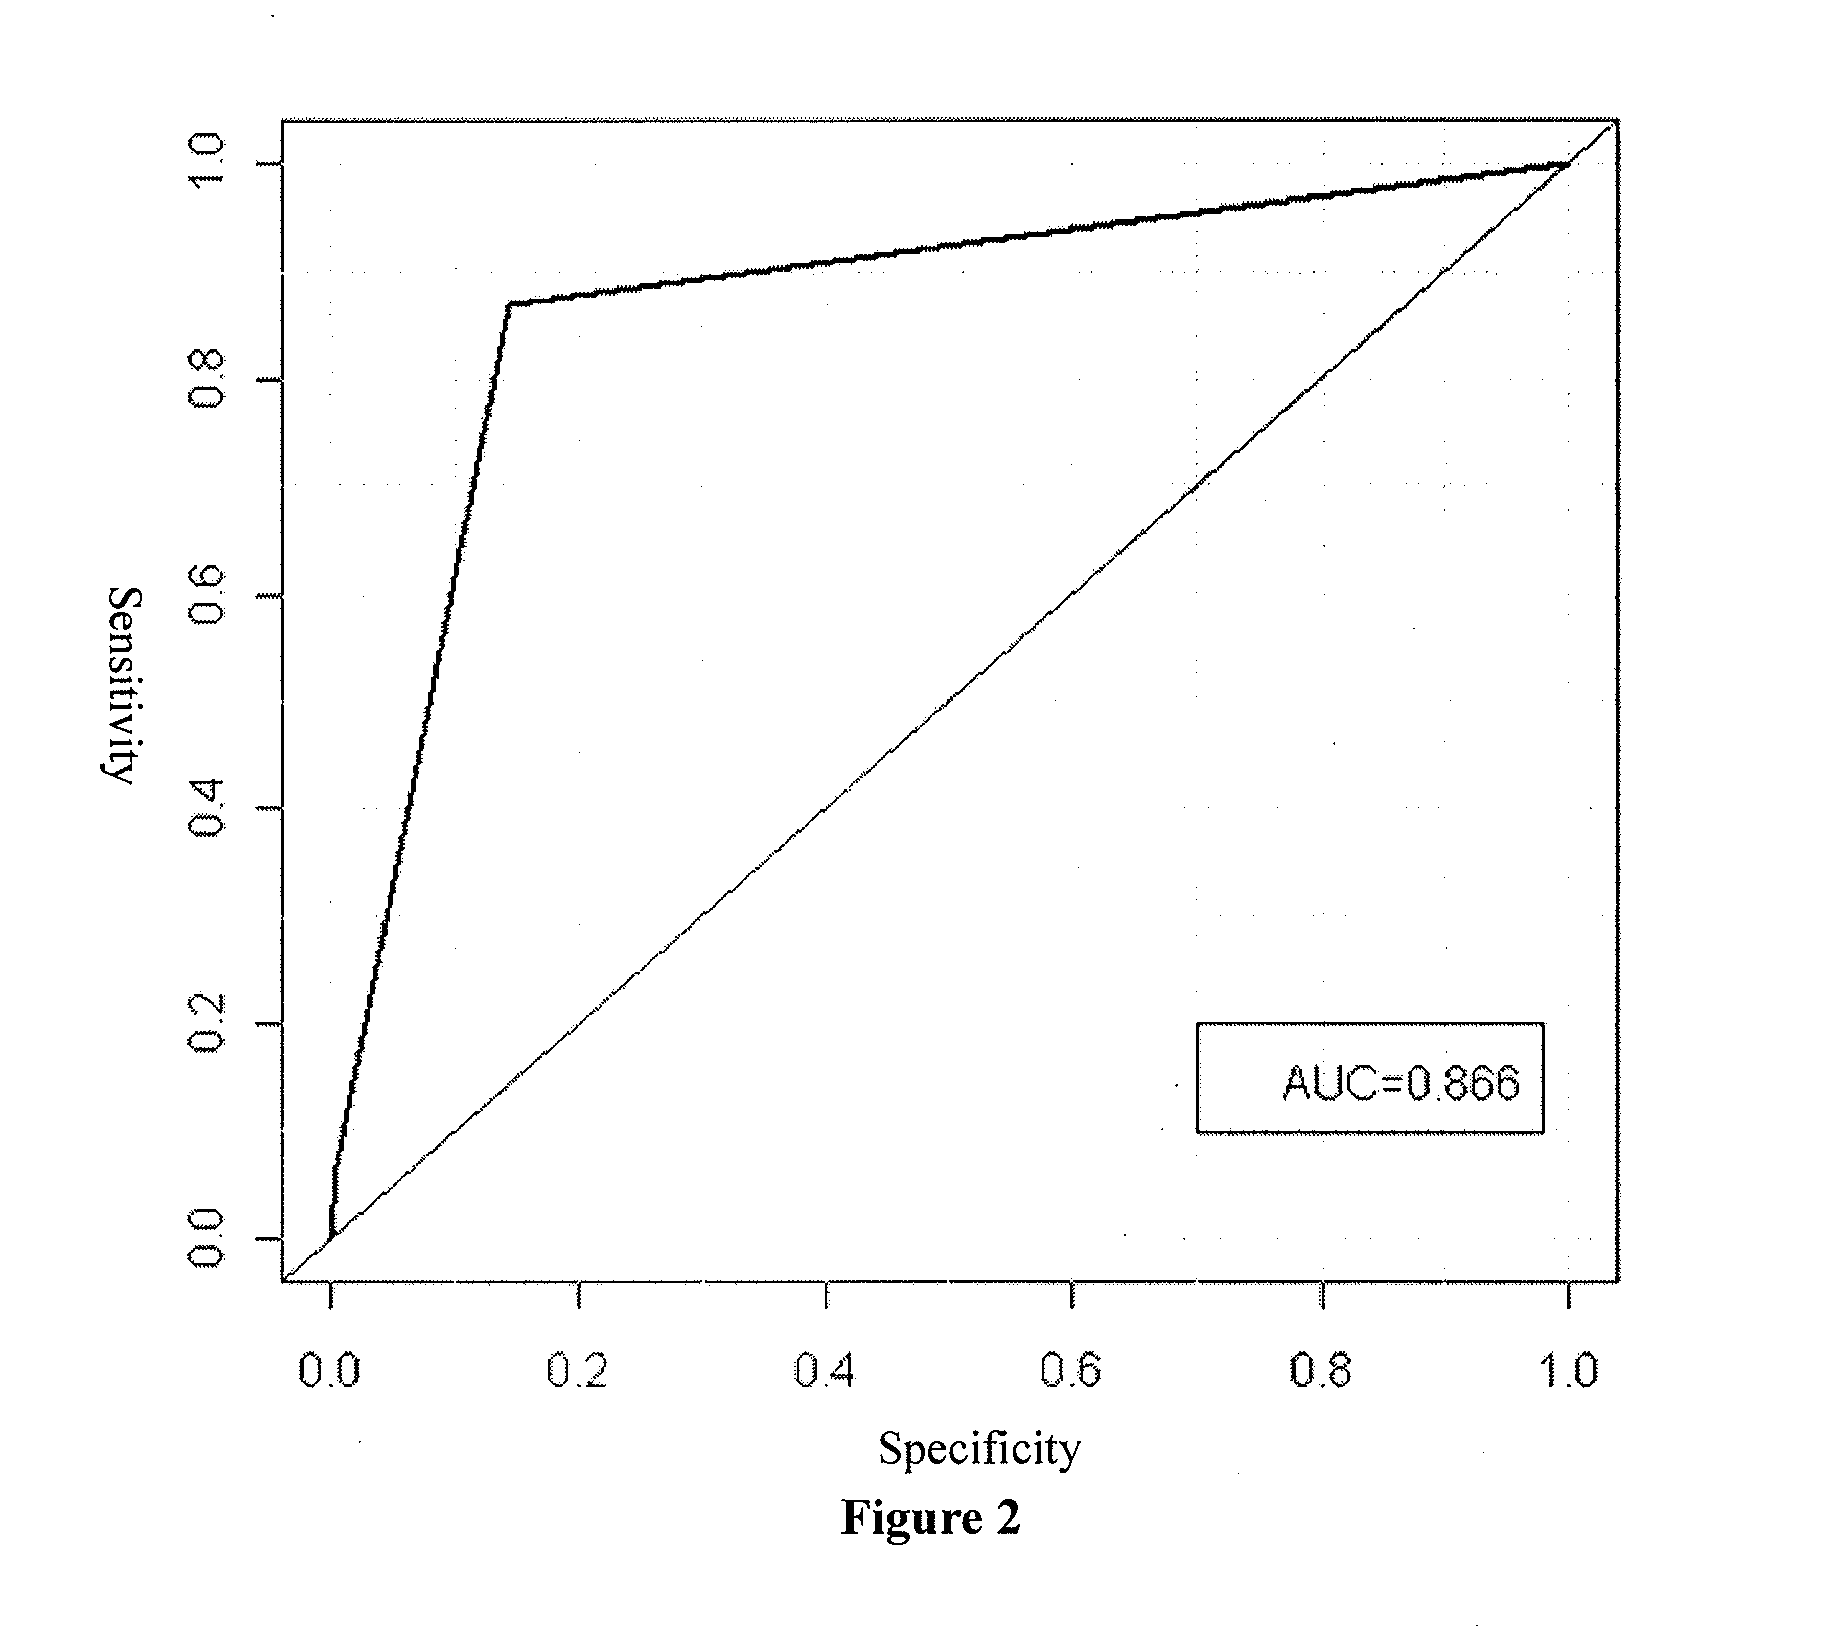 Use of hla-b*1301 allele